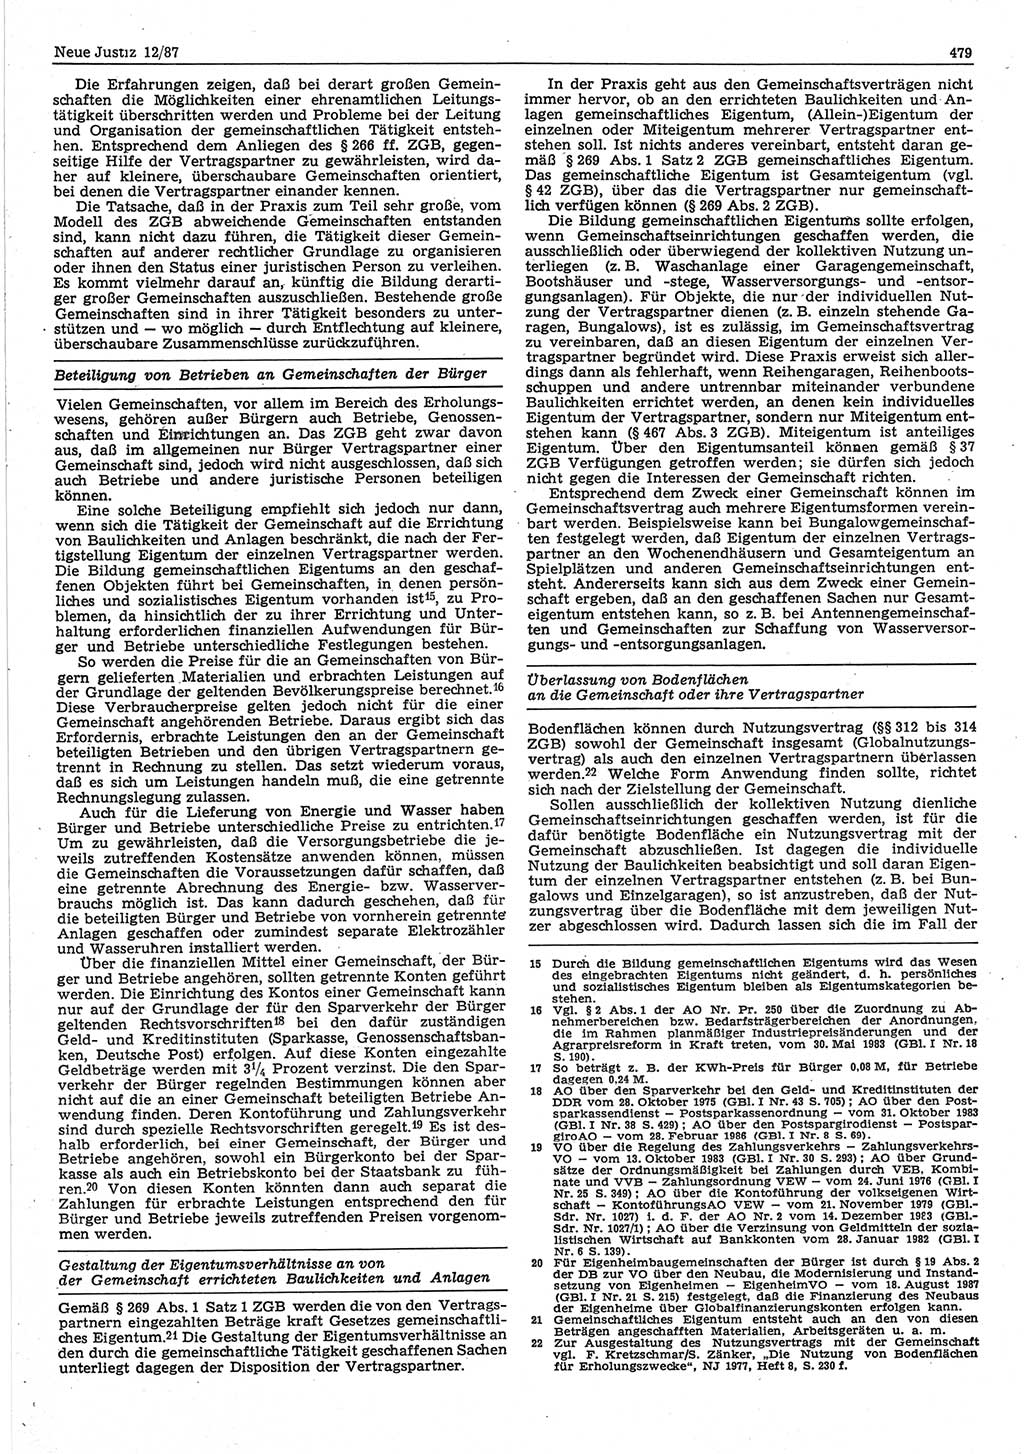 Neue Justiz (NJ), Zeitschrift für sozialistisches Recht und Gesetzlichkeit [Deutsche Demokratische Republik (DDR)], 41. Jahrgang 1987, Seite 479 (NJ DDR 1987, S. 479)